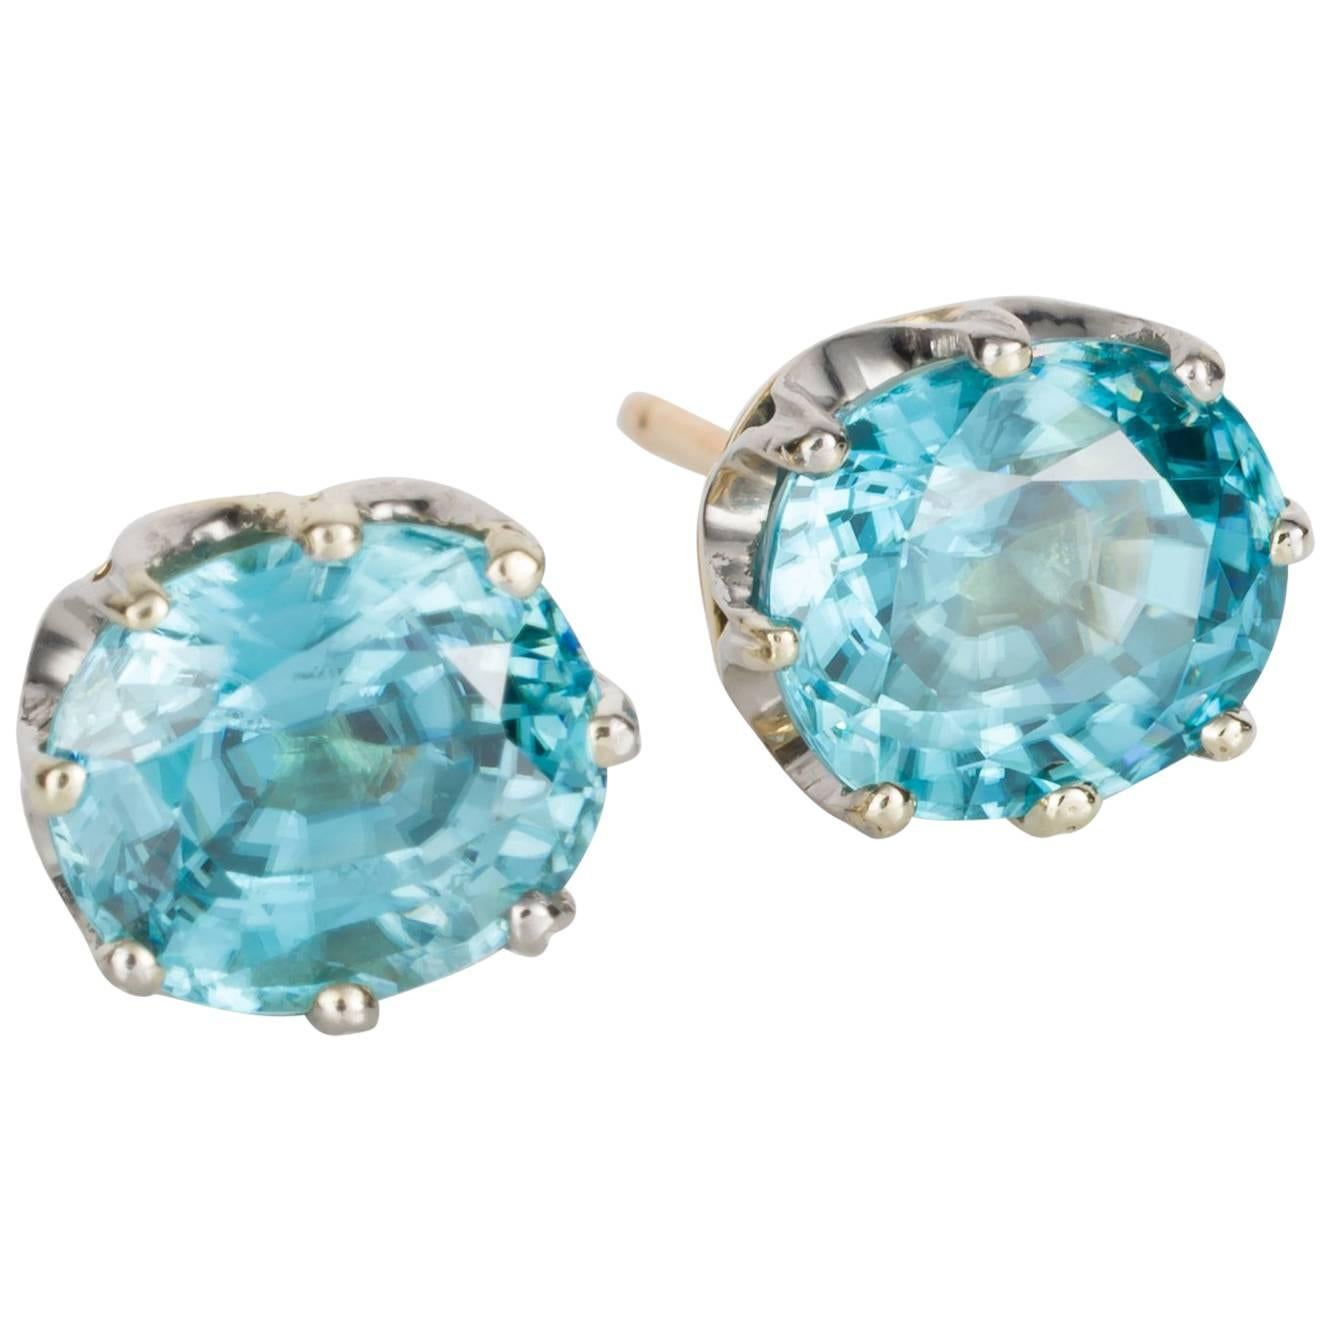 Blue Zircon Crown Stud Earrings